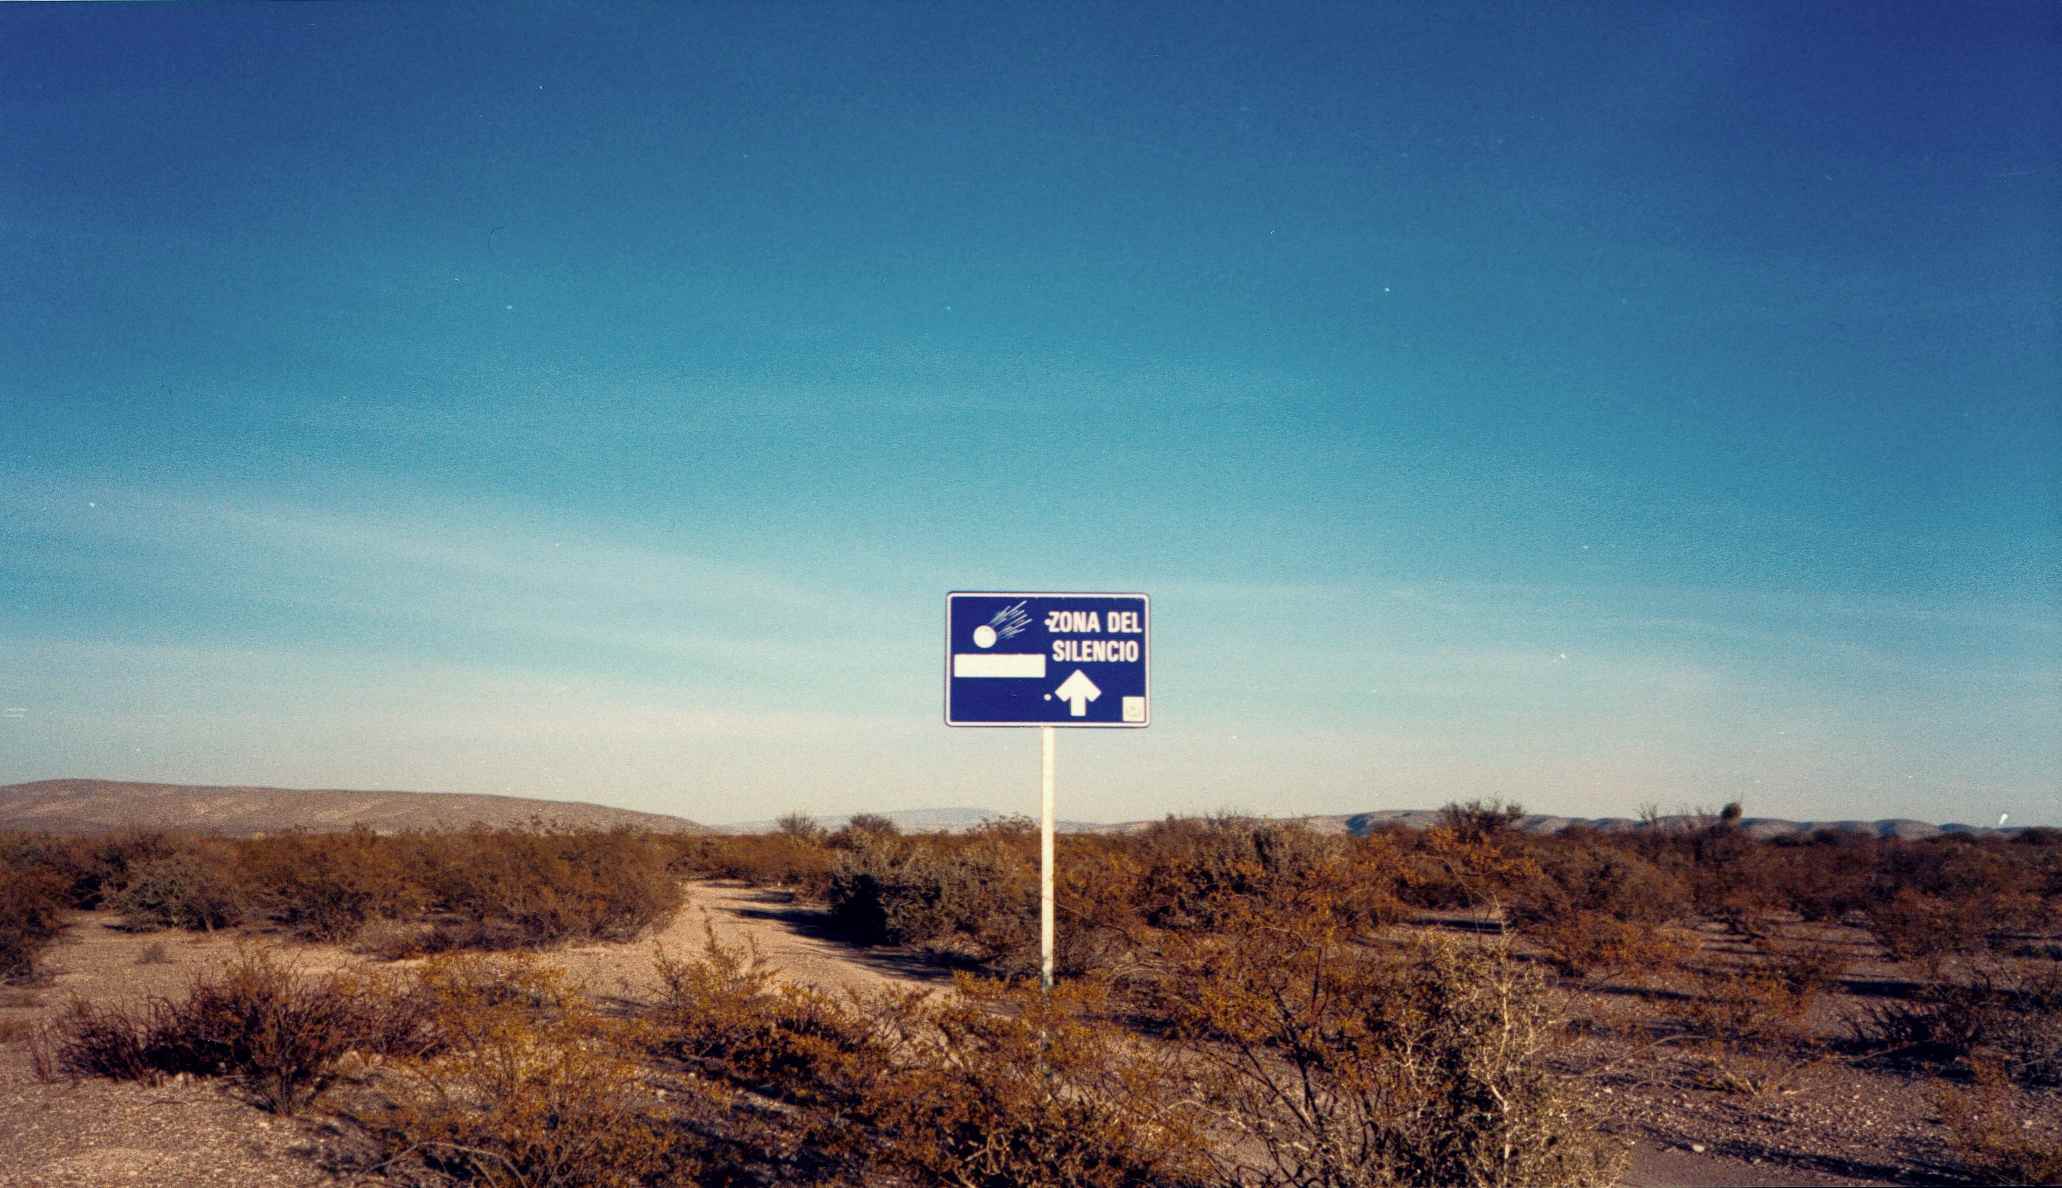 北墨西哥奇瓦瓦州沙漠Zona del Silencio静区